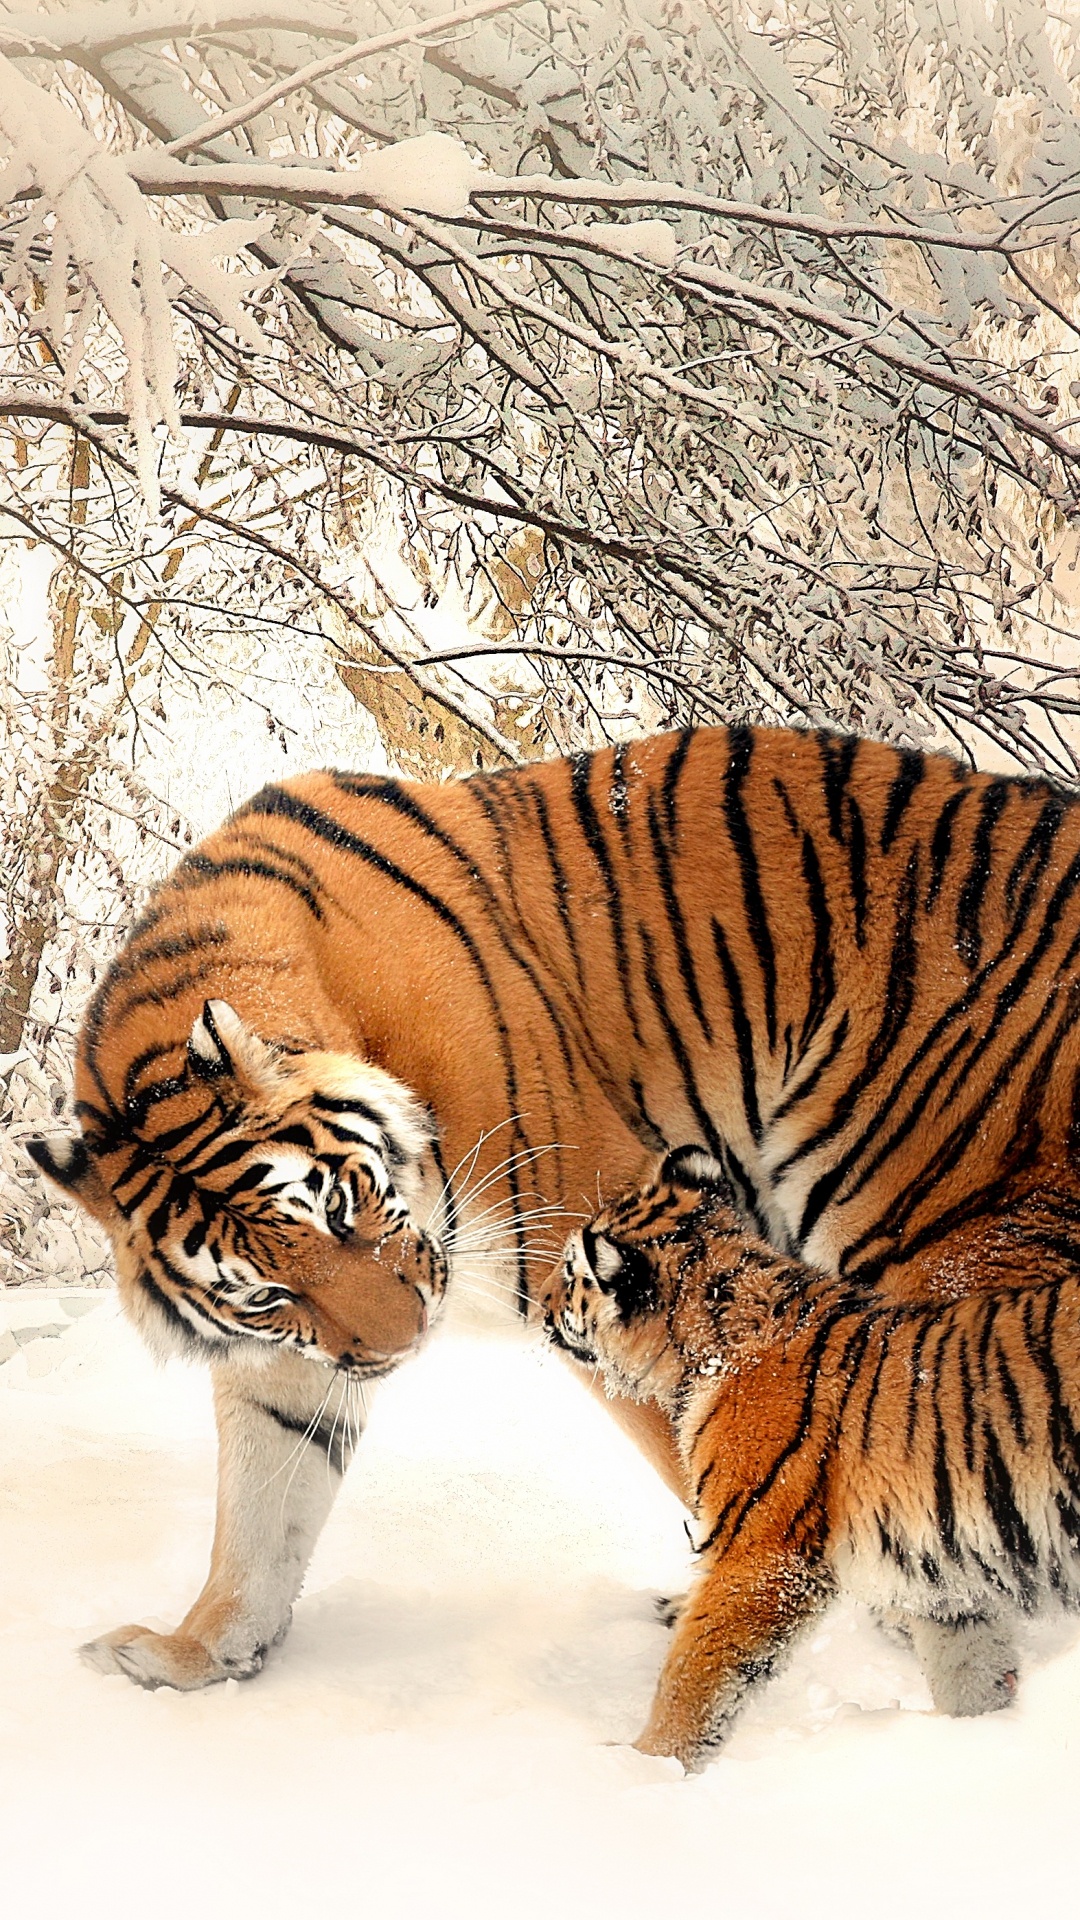 Tigre Marchant Sur un Sol Couvert de Neige Pendant la Journée. Wallpaper in 1080x1920 Resolution